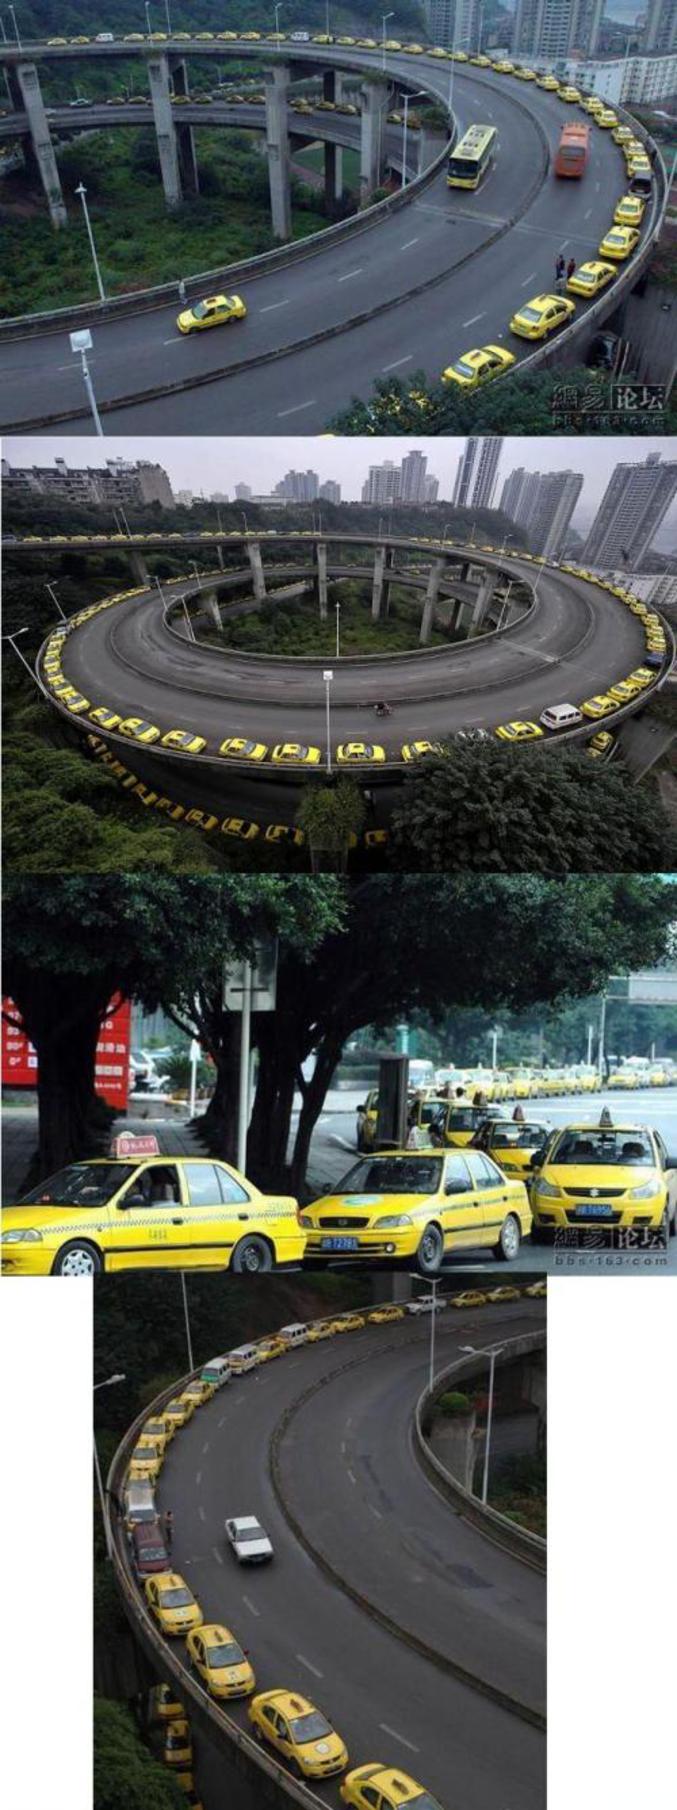 Plus de taxis que de clients ?